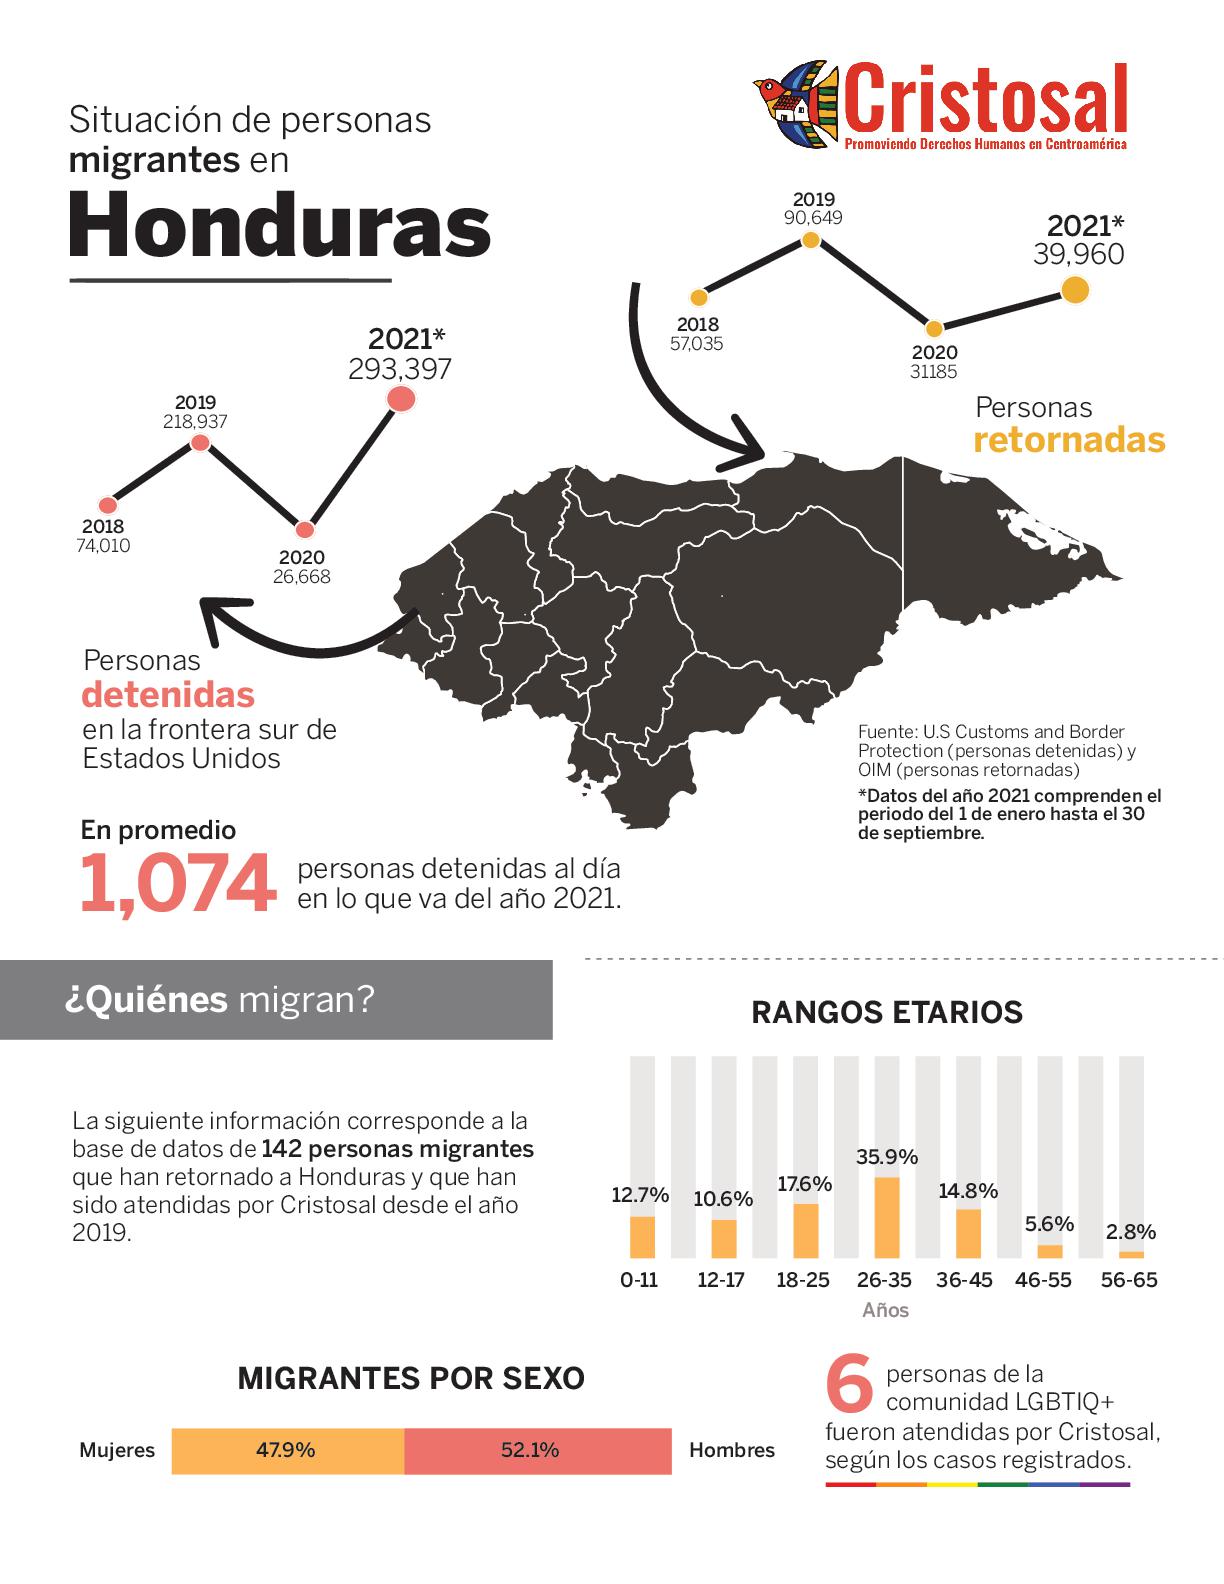 Situación de personas migrantes en Honduras